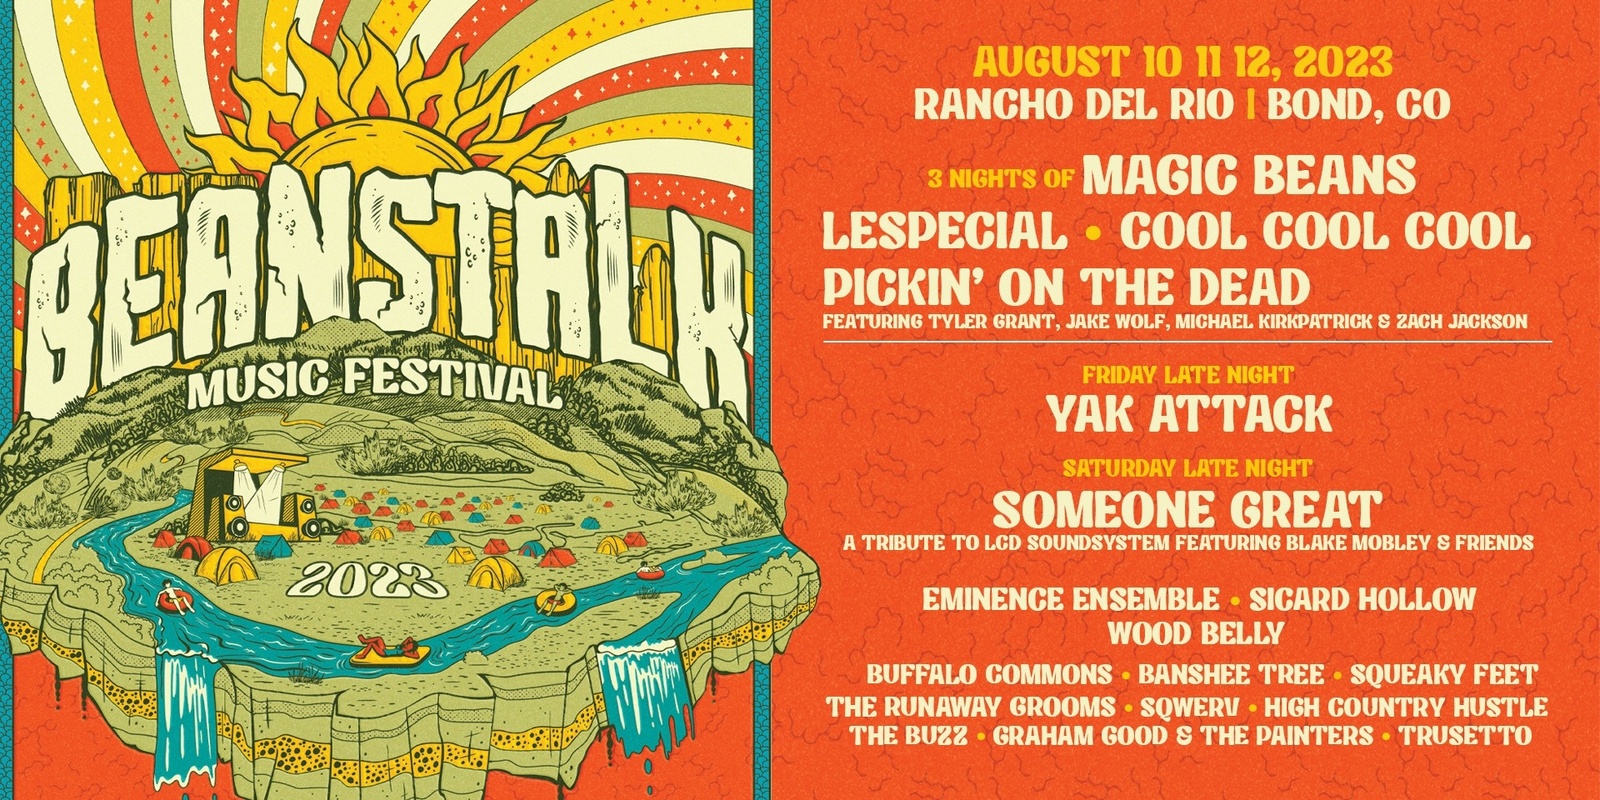 Banner image for Beanstalk Music Festival 2023